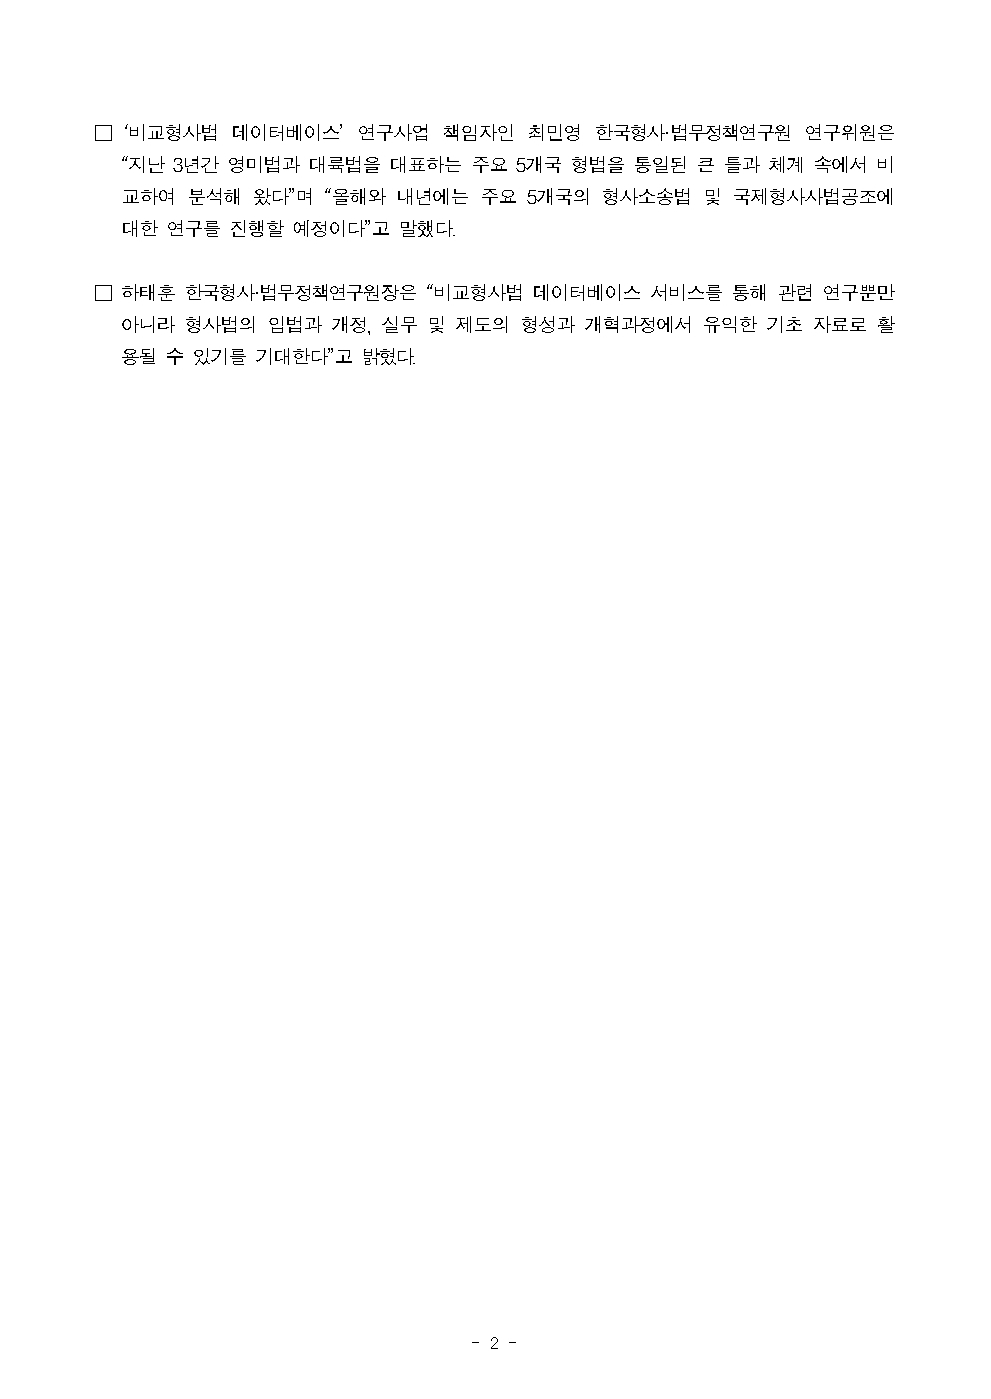 한국형사·법무정책연구원 비교형사법 데이터베이스 서비스 개시 : 자세한 내용은 하단 pdf파일 참조